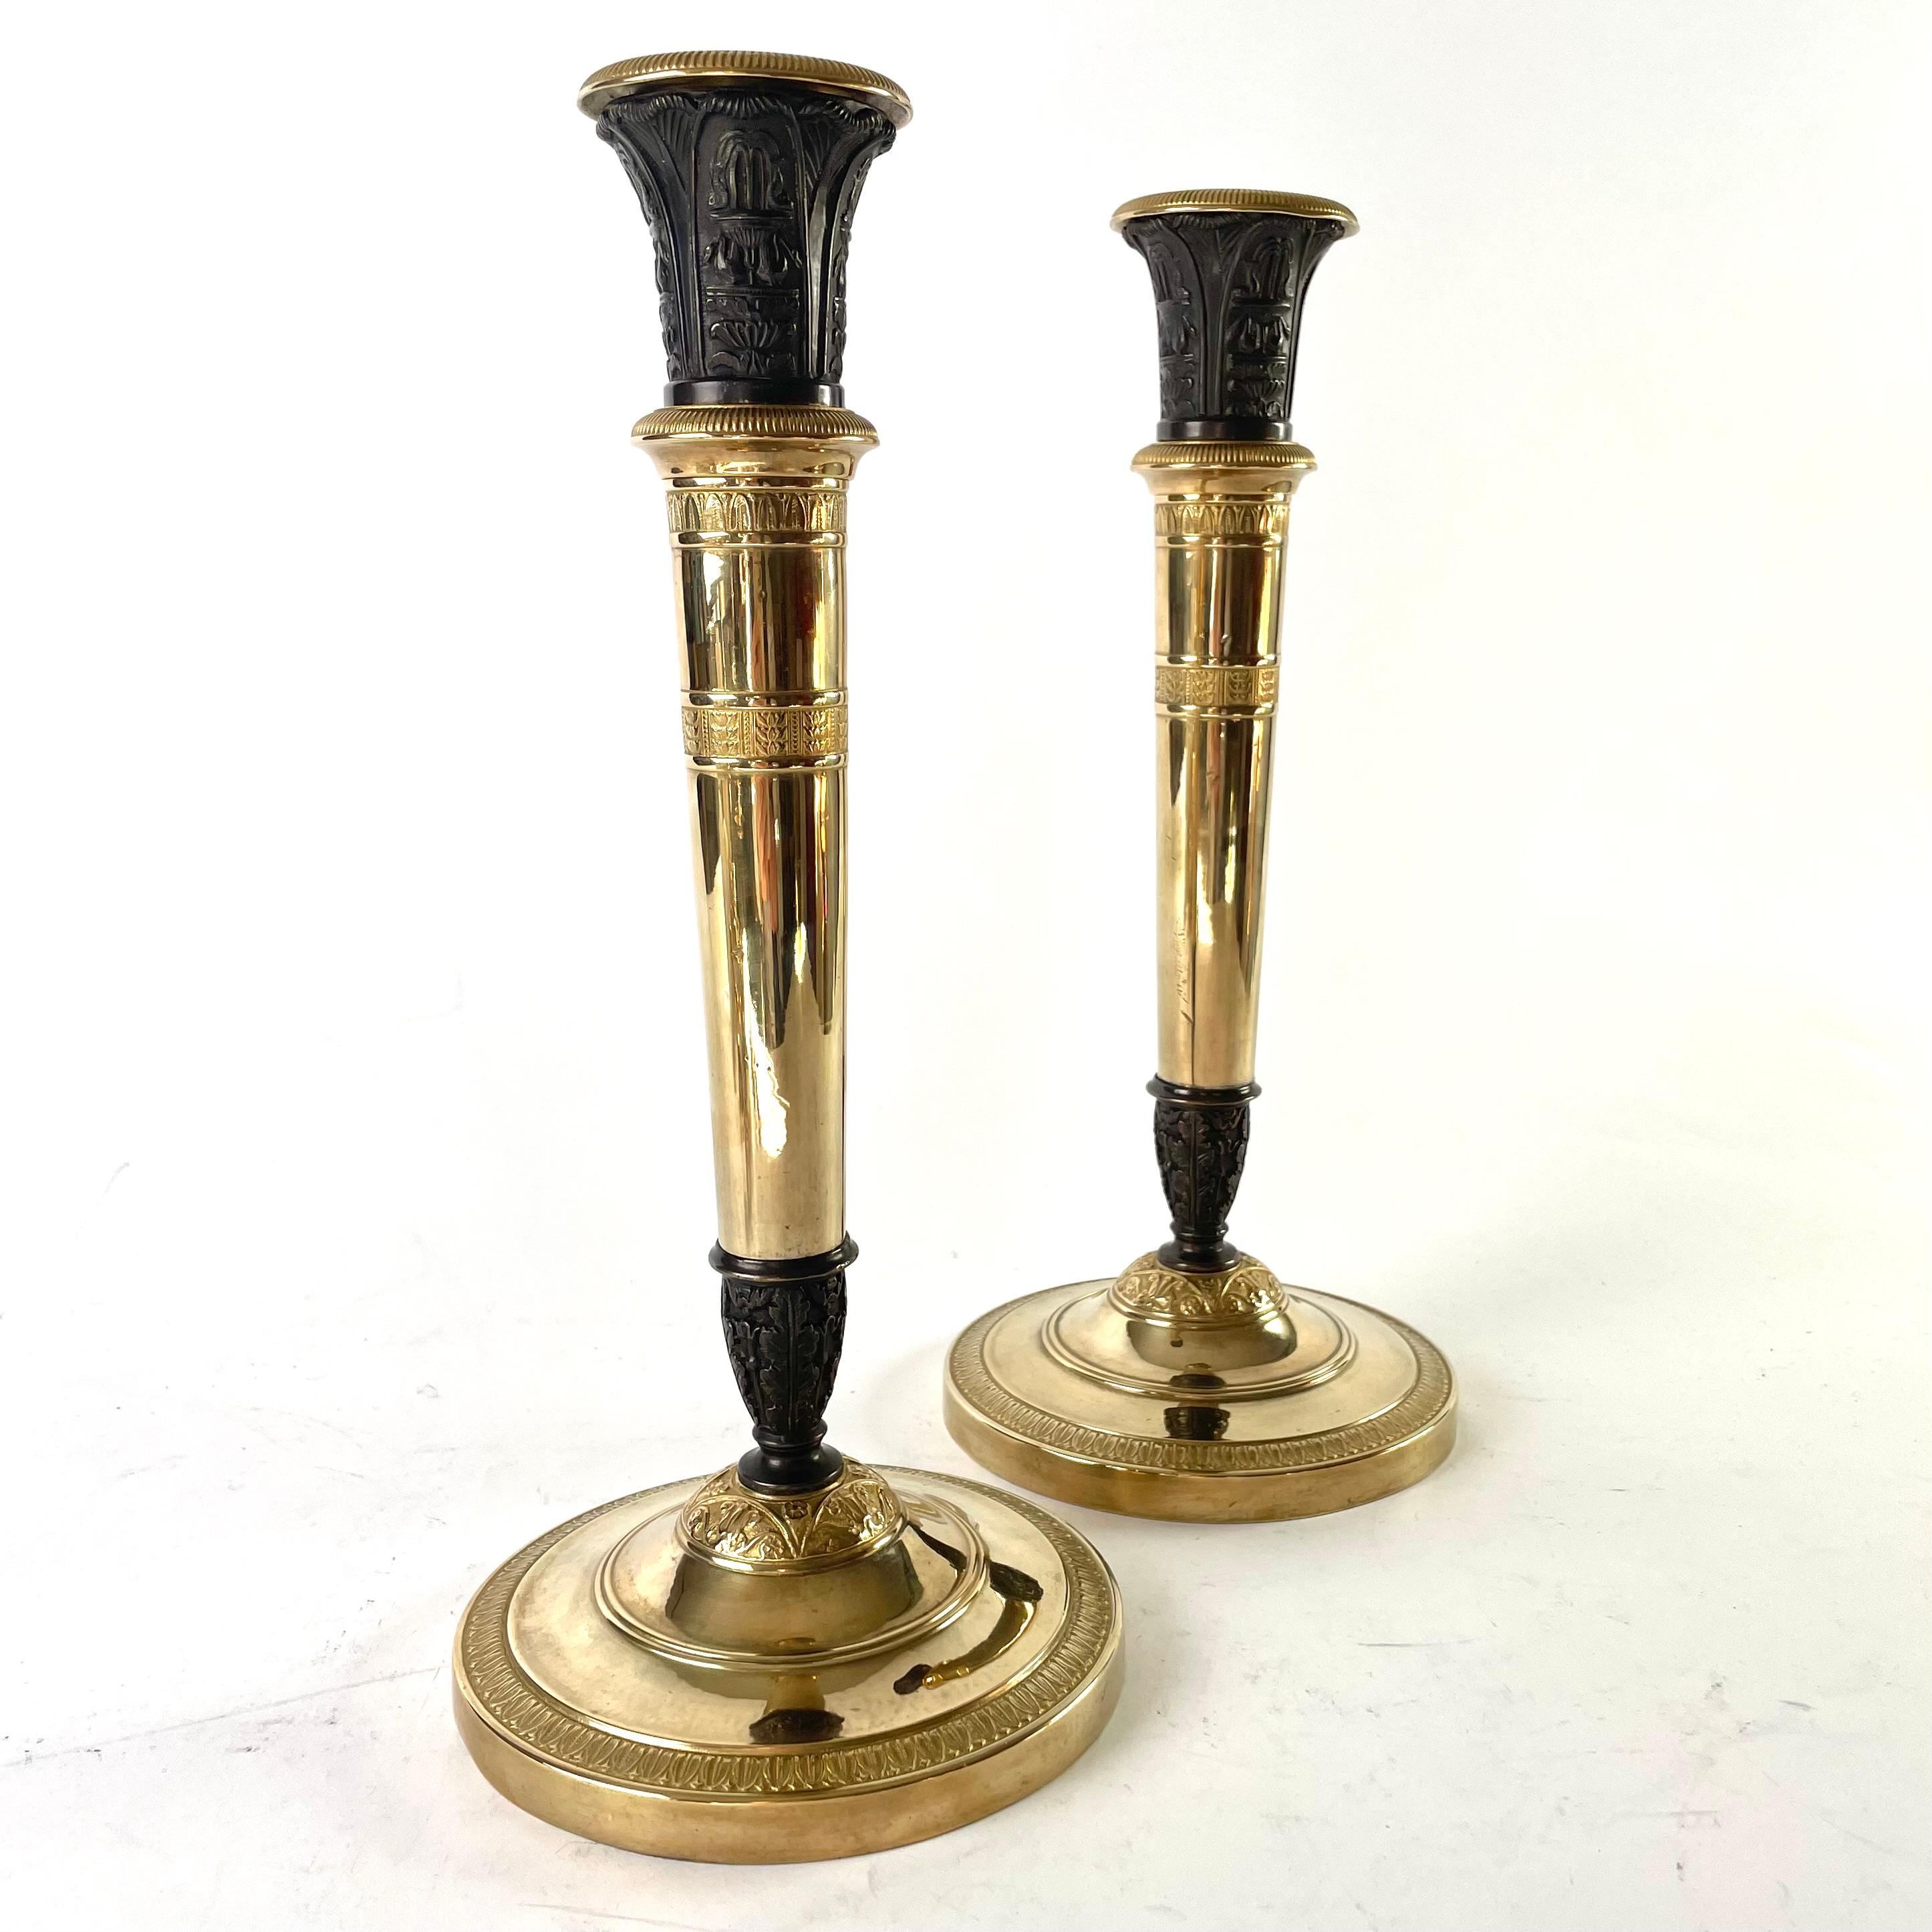 Ein Paar große und elegante Empire-Kerzenleuchter, die in Kandelaber umgewandelt werden können, hergestellt in Frankreich in den 1820er Jahren. Vergoldete und dunkel patinierte Bronze. Kann als großer Kerzenhalter oder als dreiarmiger Kandelaber